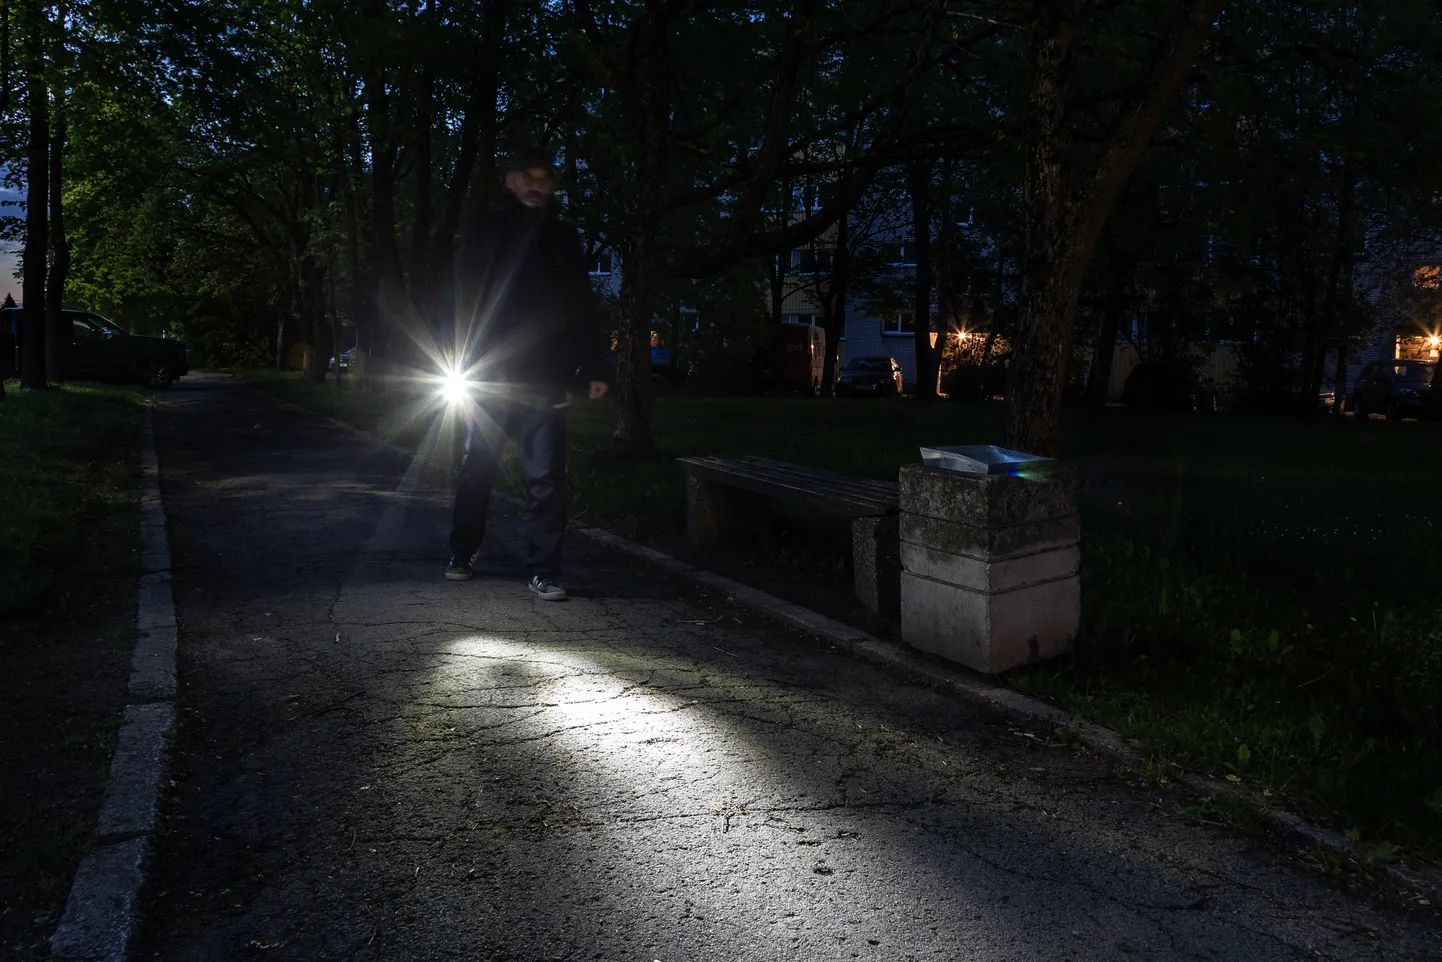 Кохтла-Ярвеское горуправление посоветовало людям для безопасного передвижения пользоваться фонариком на темных городских улицах и по возможности ходить вместе с кем-нибудь.